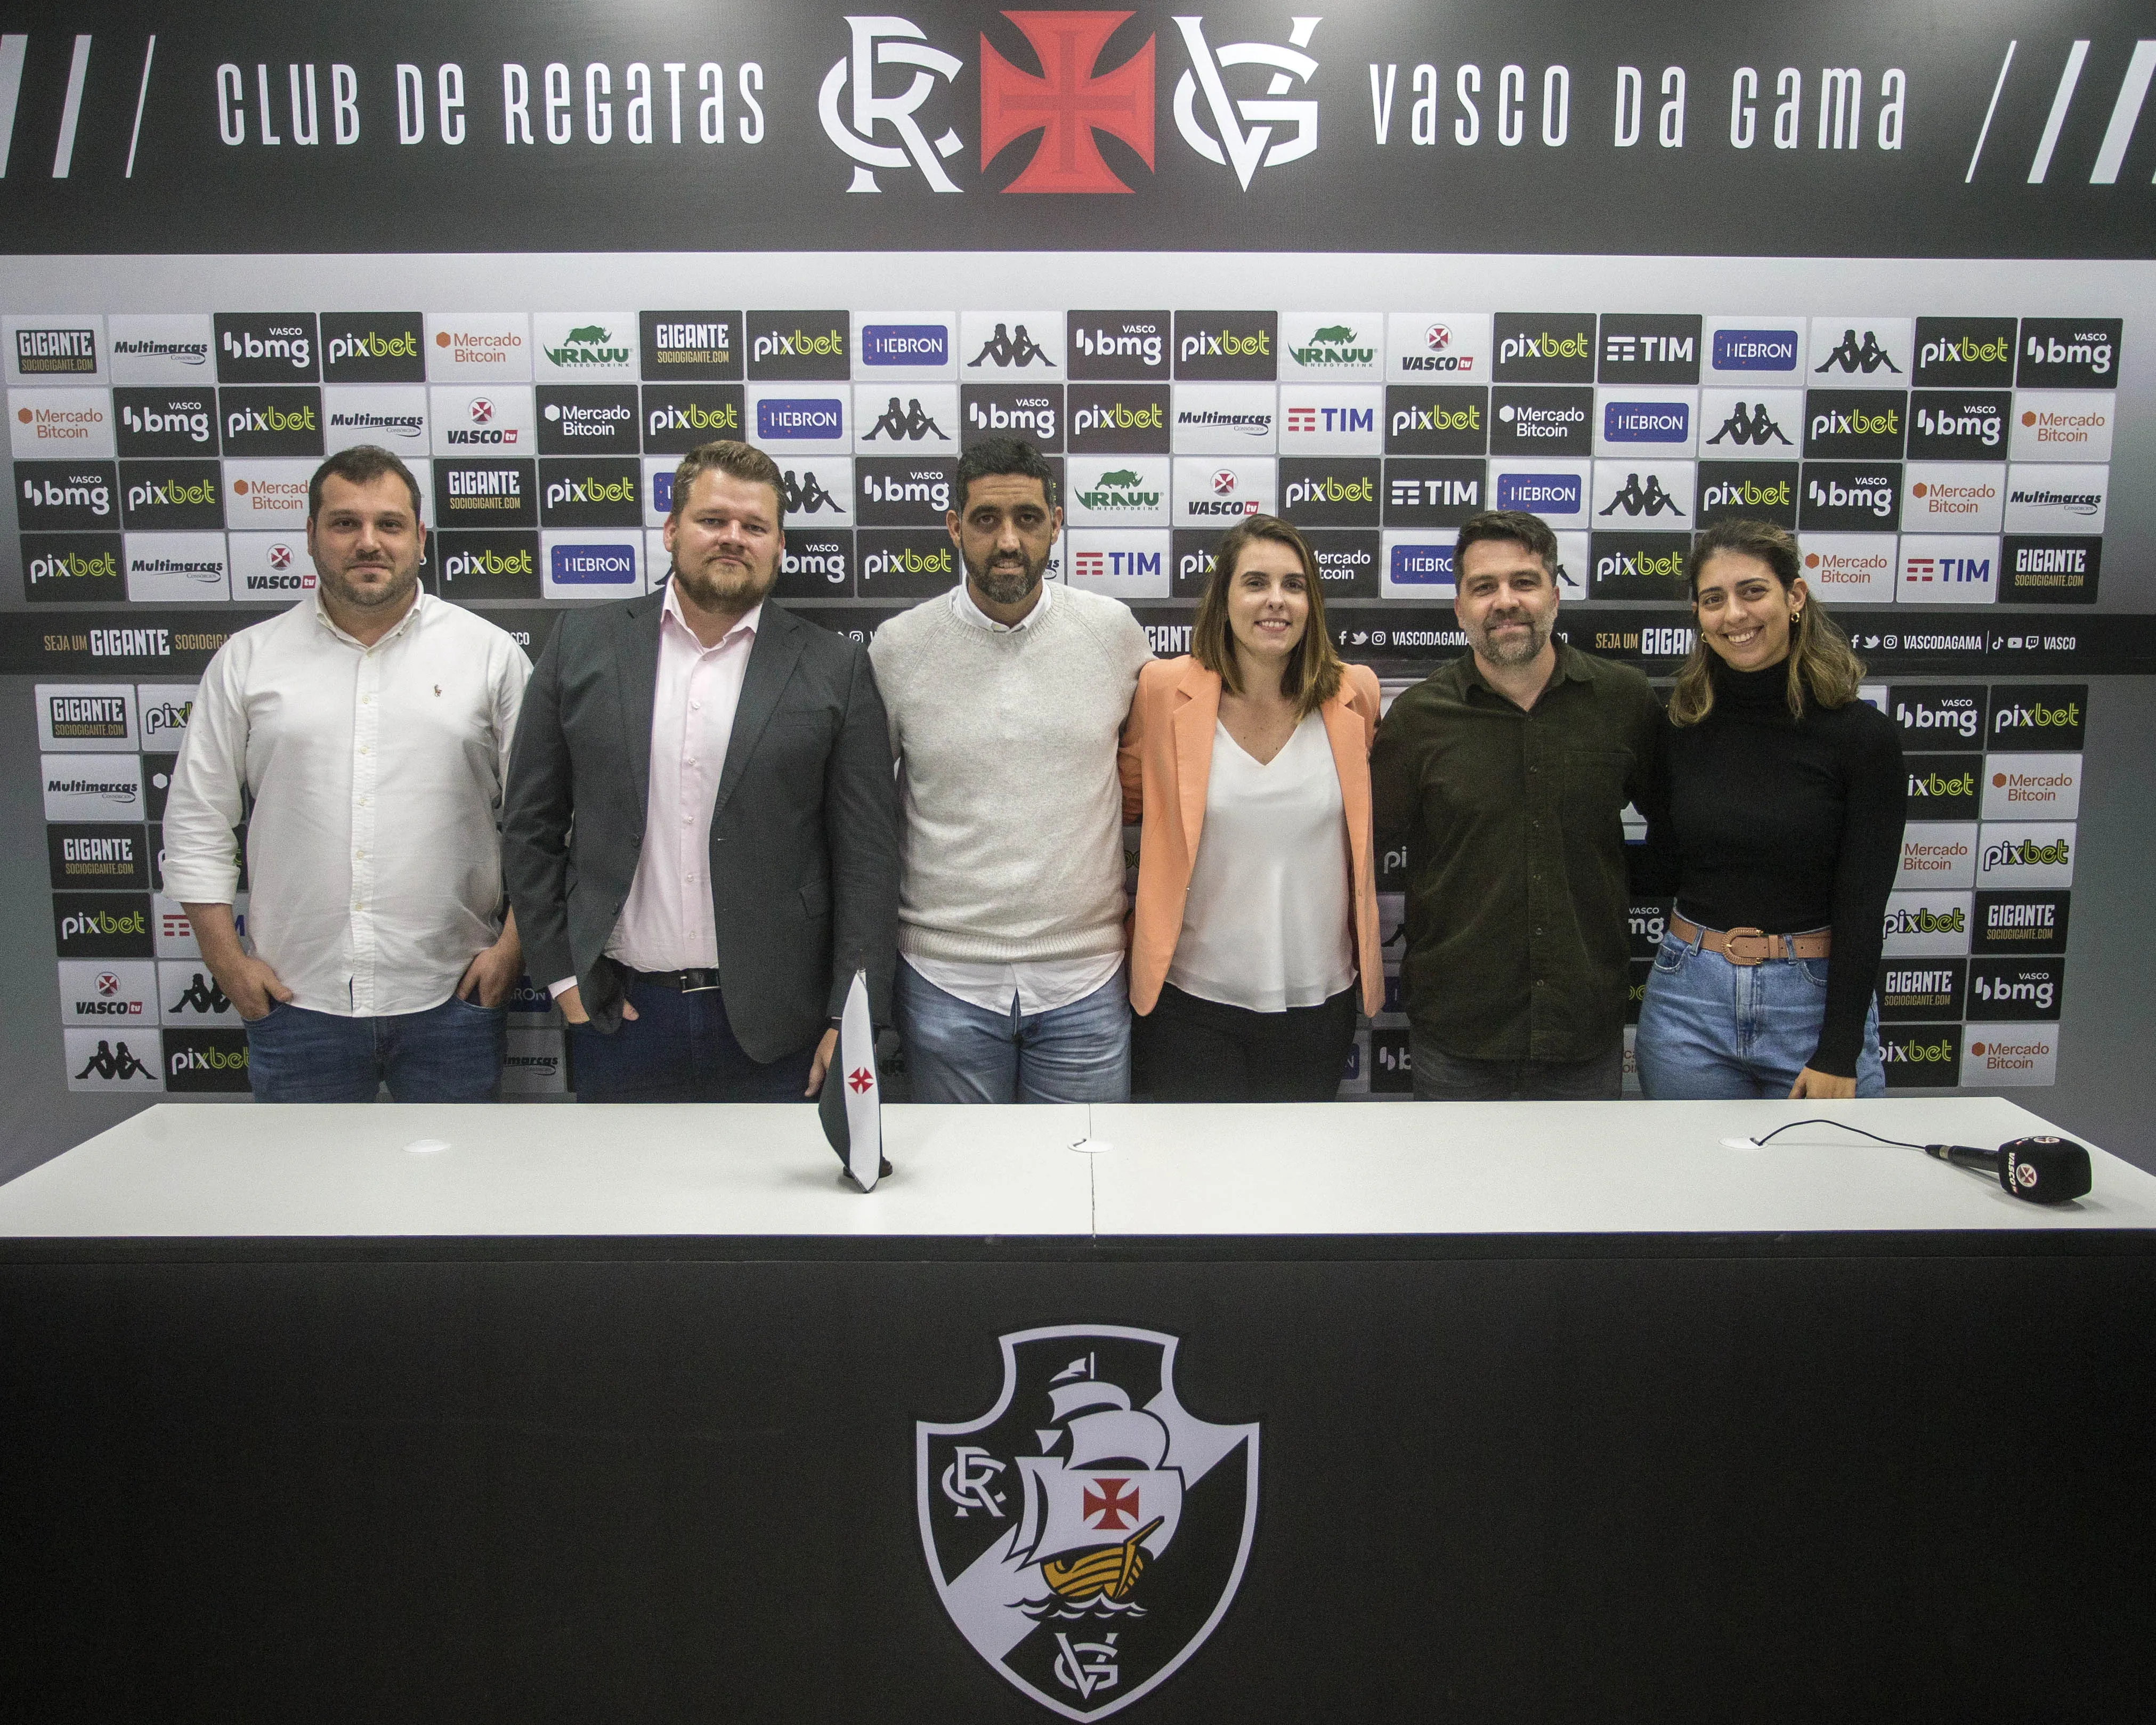 CEO do Vasco, Luiz Mello, no centro da foto, ao lado de outros funcionários do clube